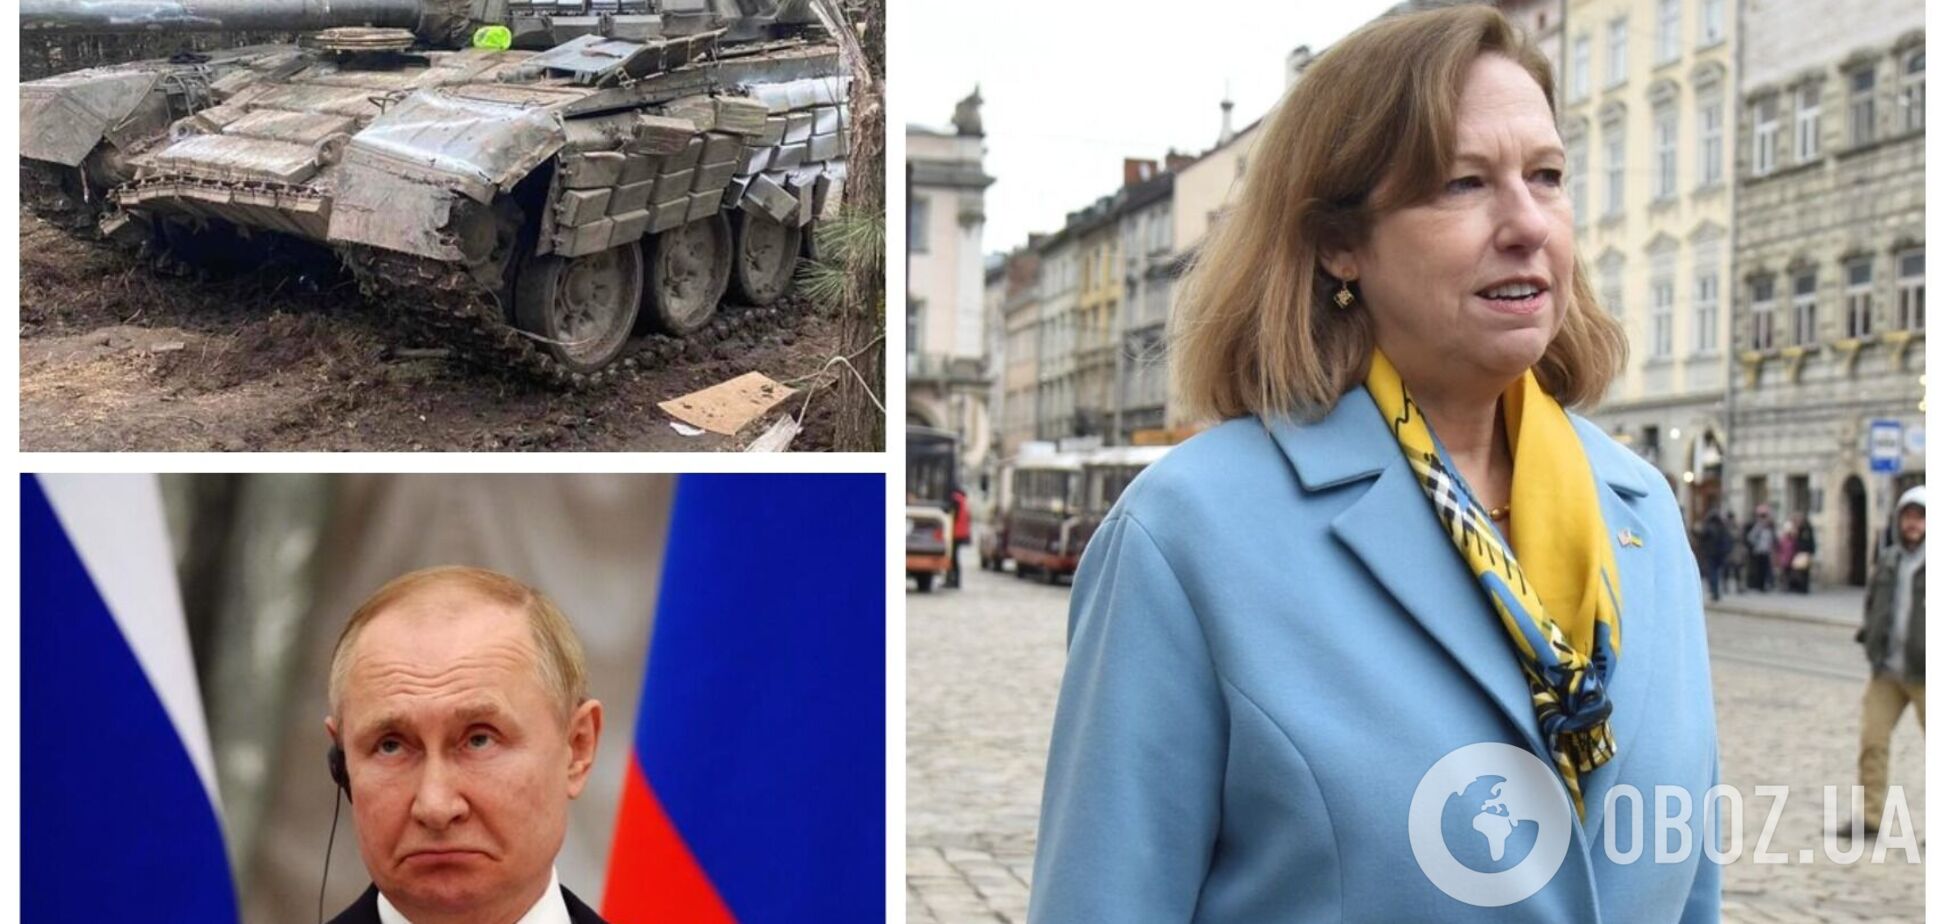 Кристина Квин рассказала, как провалились планы Путина в Украине: он хотел захватить всю страну за 10 дней